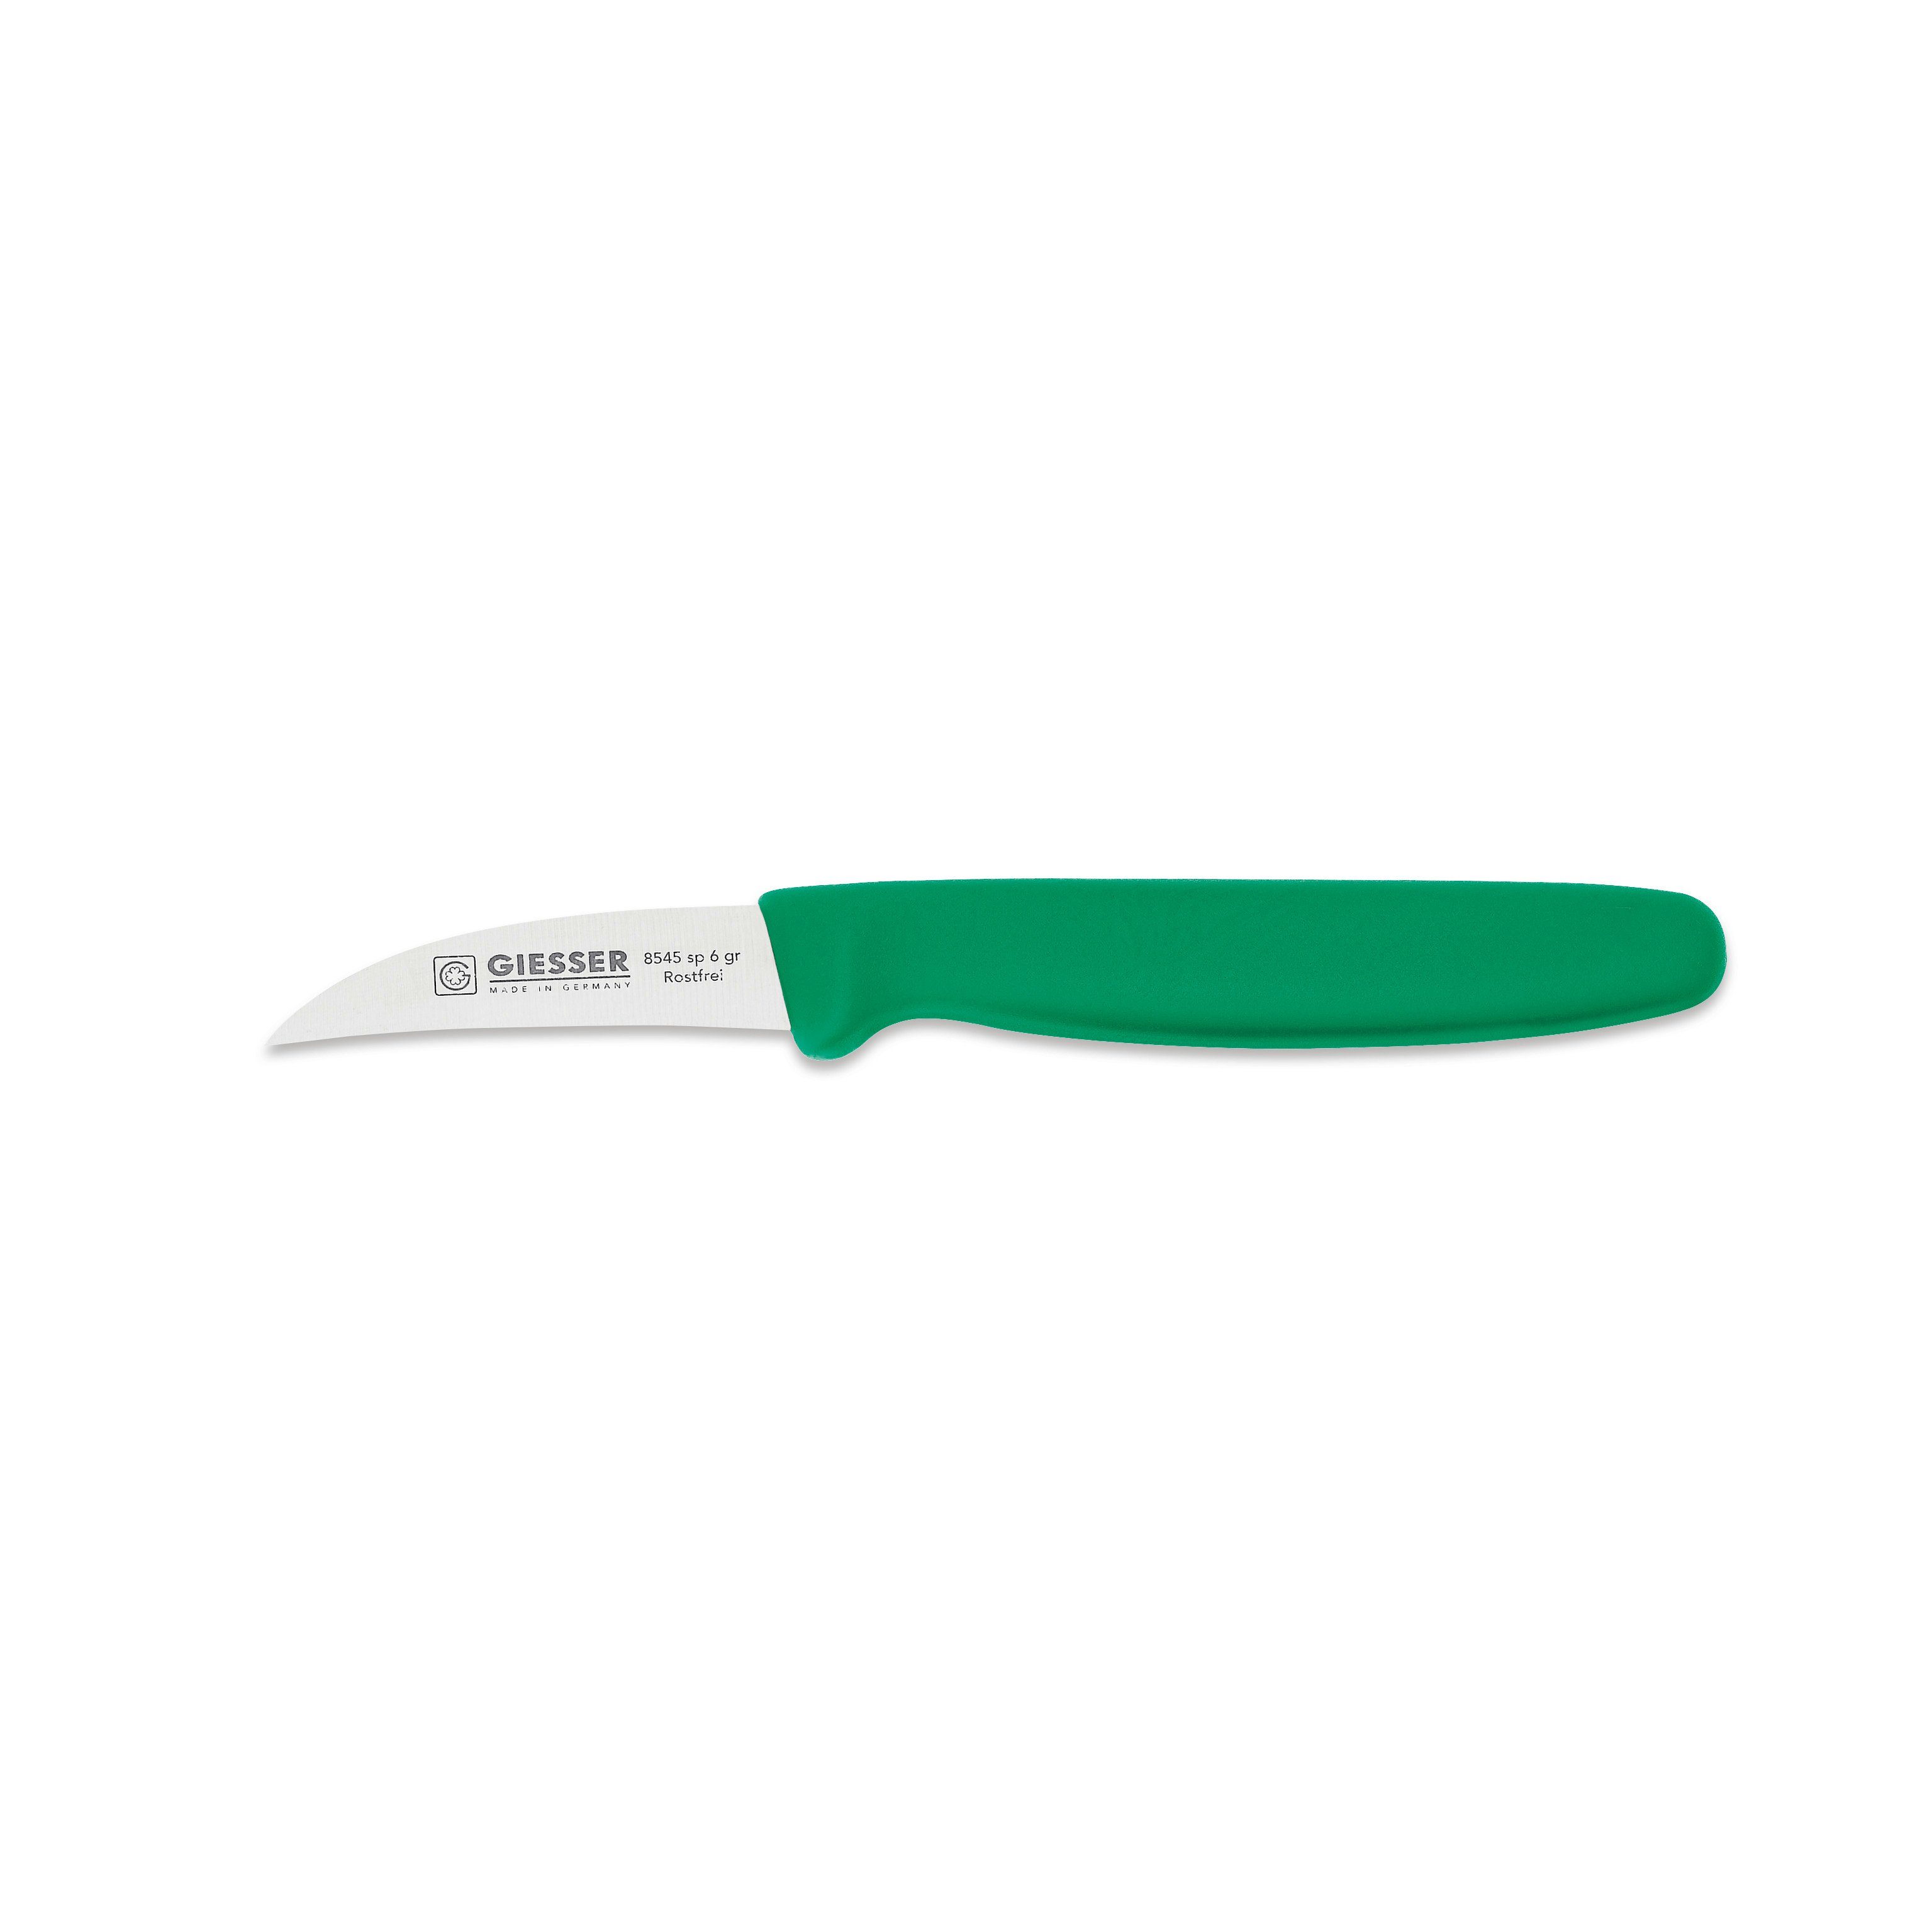 Giesser Messer Schälmesser Gemüsemesser 8545 sp 6, Handabzug, Klinge 6 cm Hohle-Schneide grün